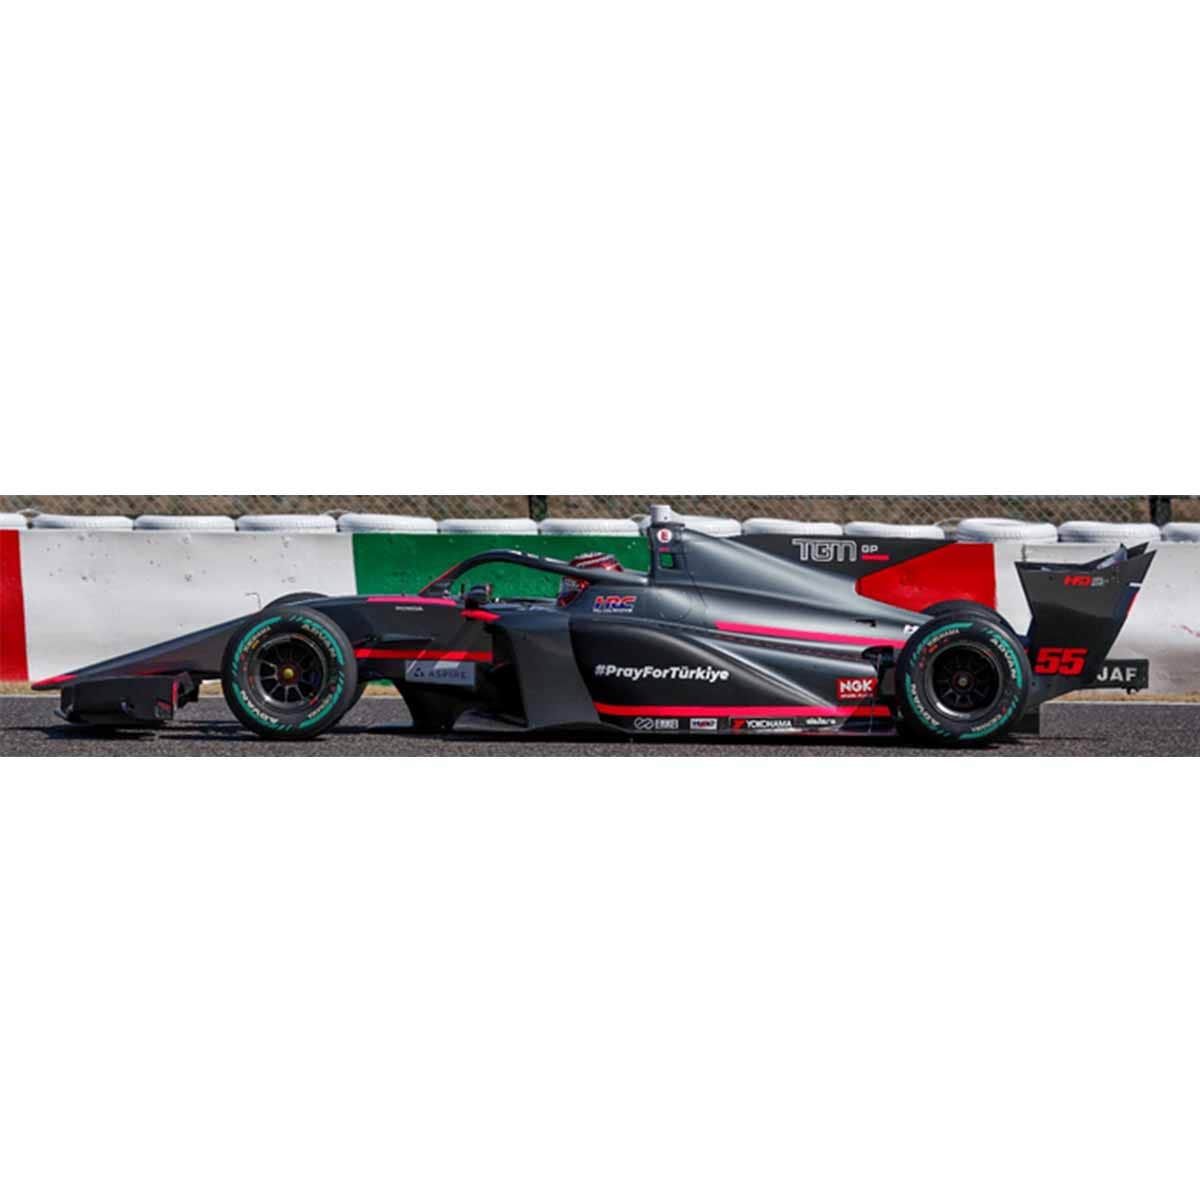 TGM Grand Prix SF23 No.55 TGM Grand Prix M-TEC HR-417E - Super Formula 2023 - Cem Bolukbasi - 1:43 Scale Resin Model Car